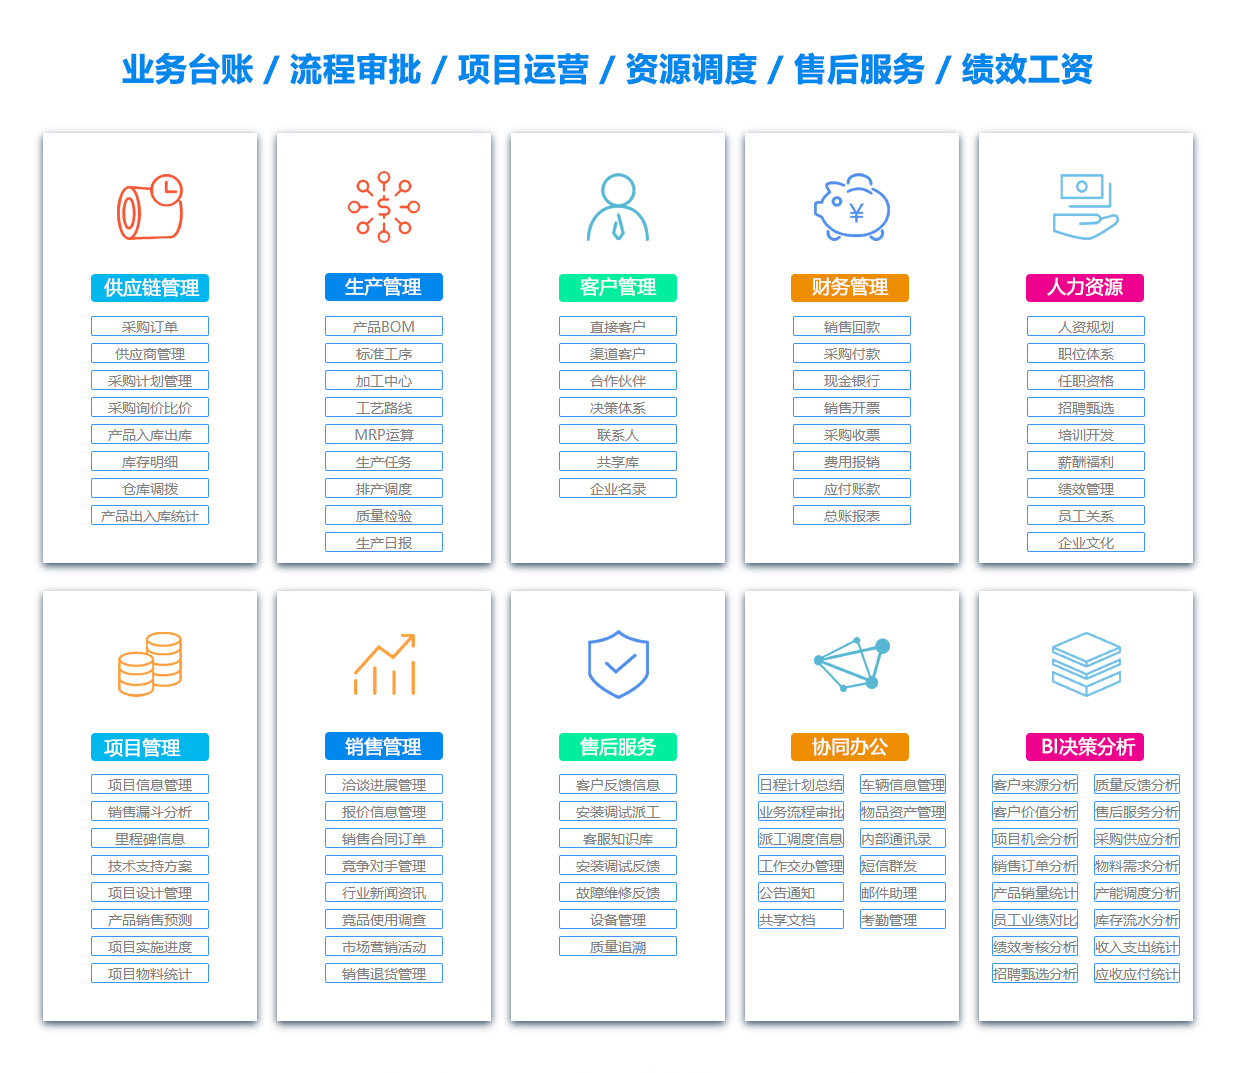 郑州SCM:供应链管理系统